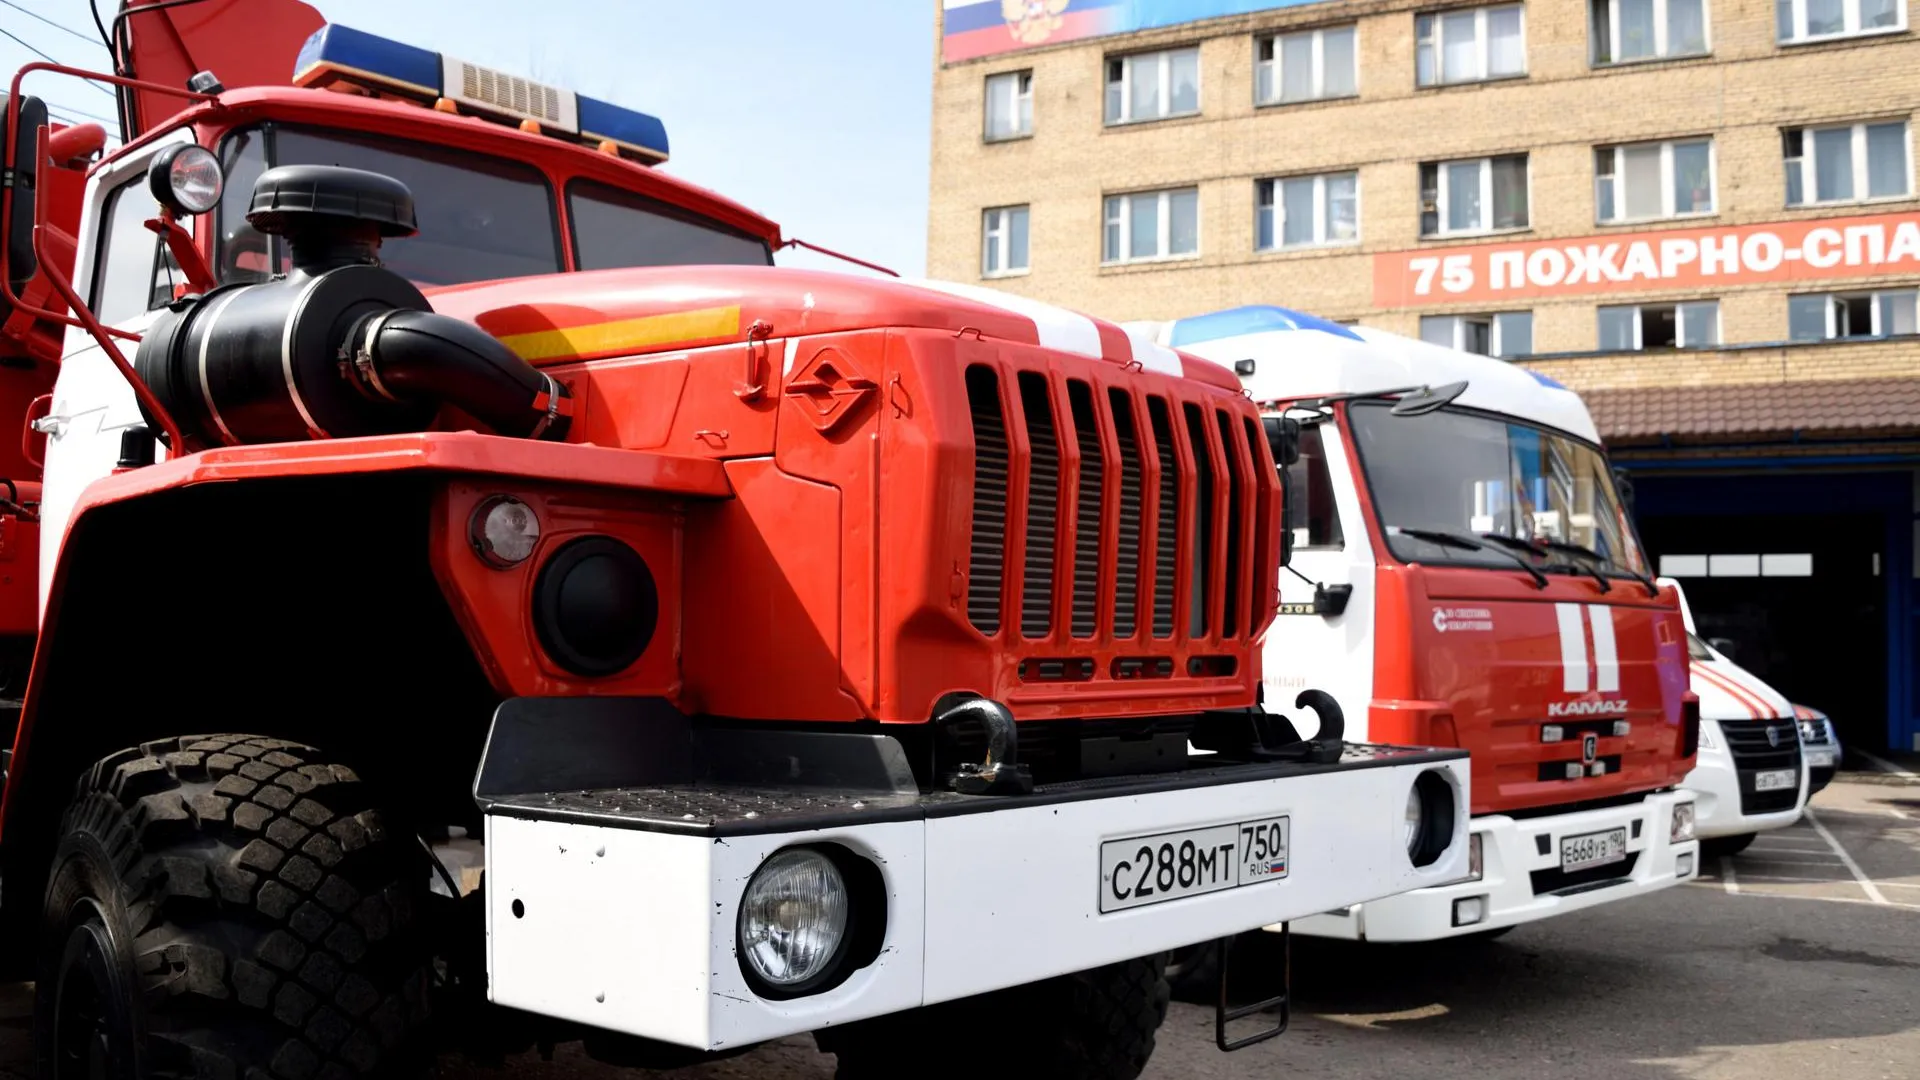 В Подмосковье объявлена закупка на поставку модульного здания для пожарного депо